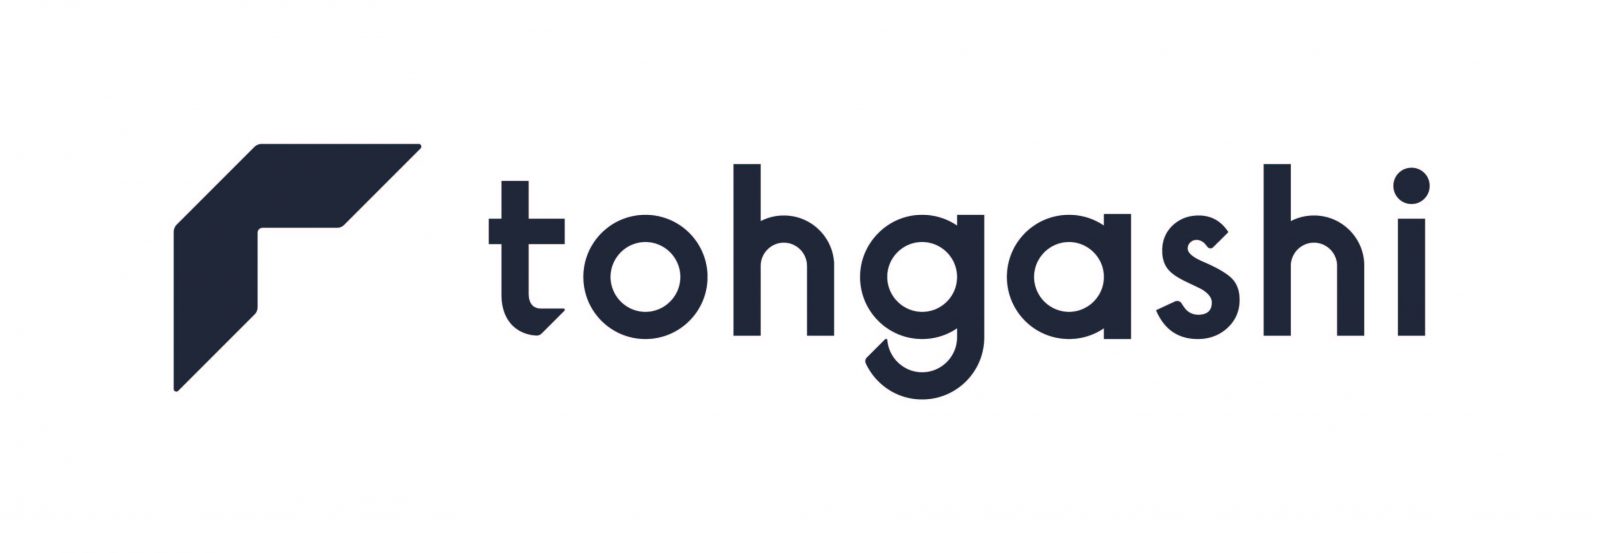 tohgashi_logo